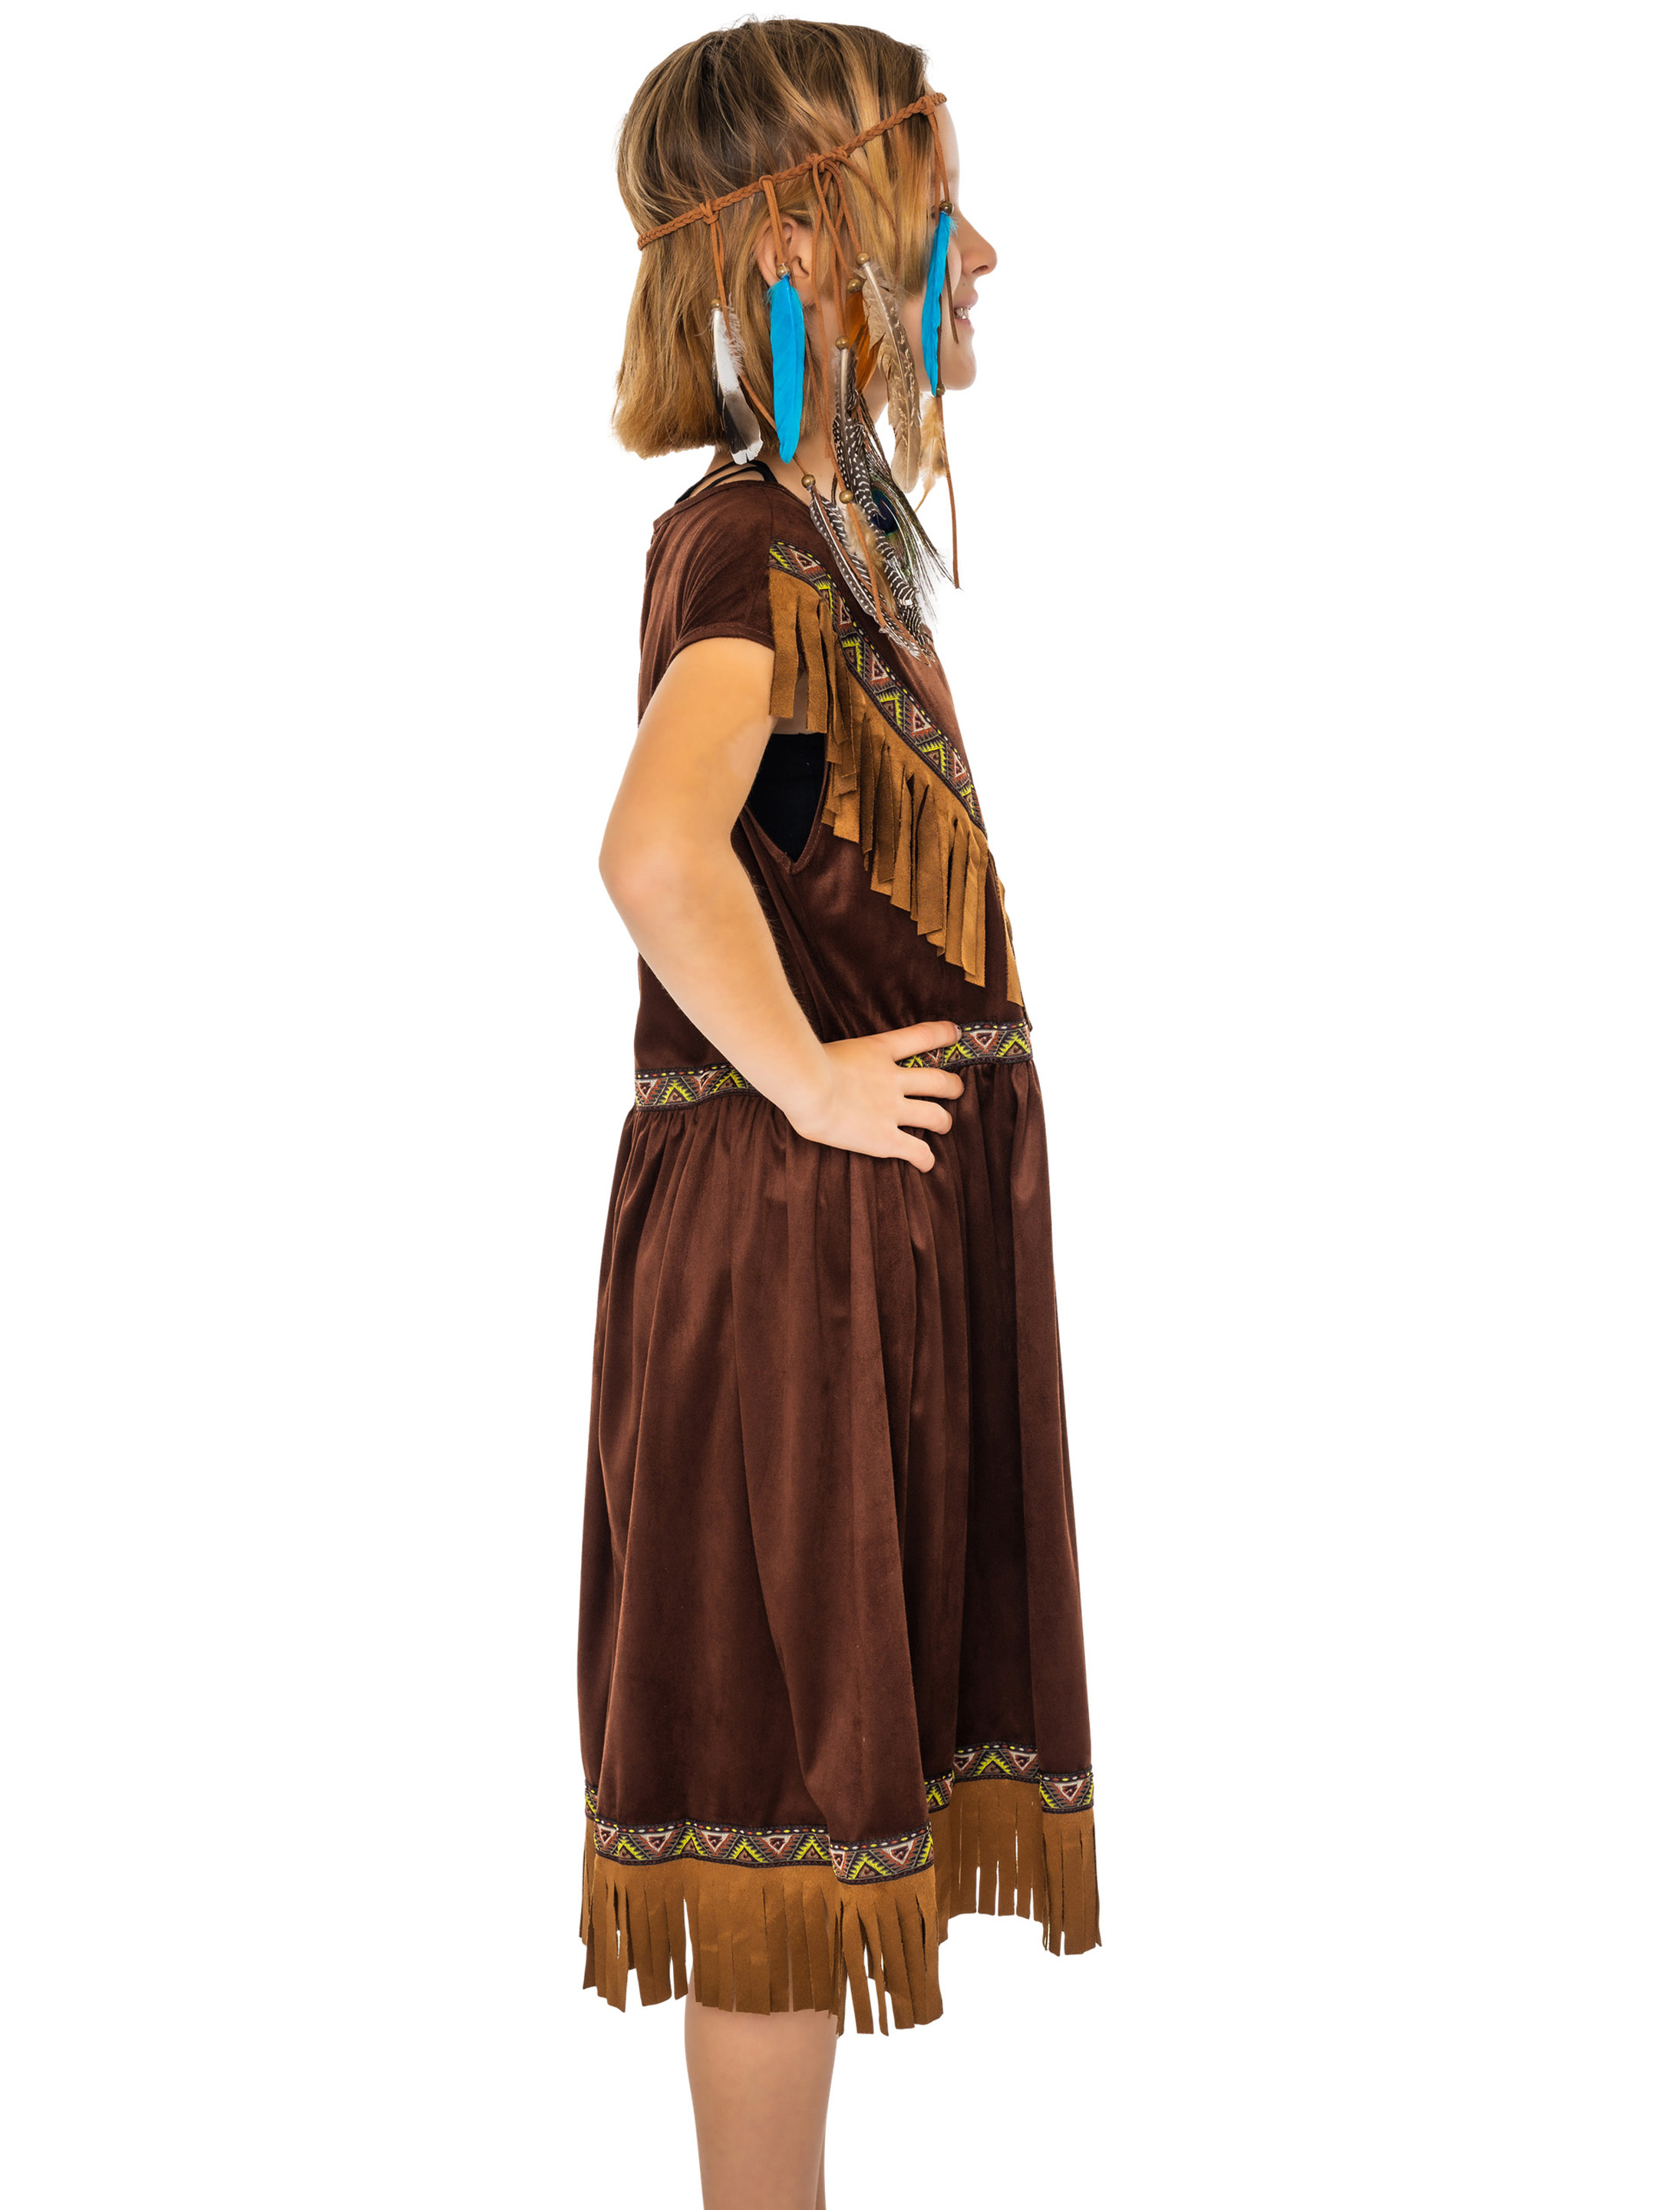 Kleid Indianerin Tahki Kinder Mädchen braun 152